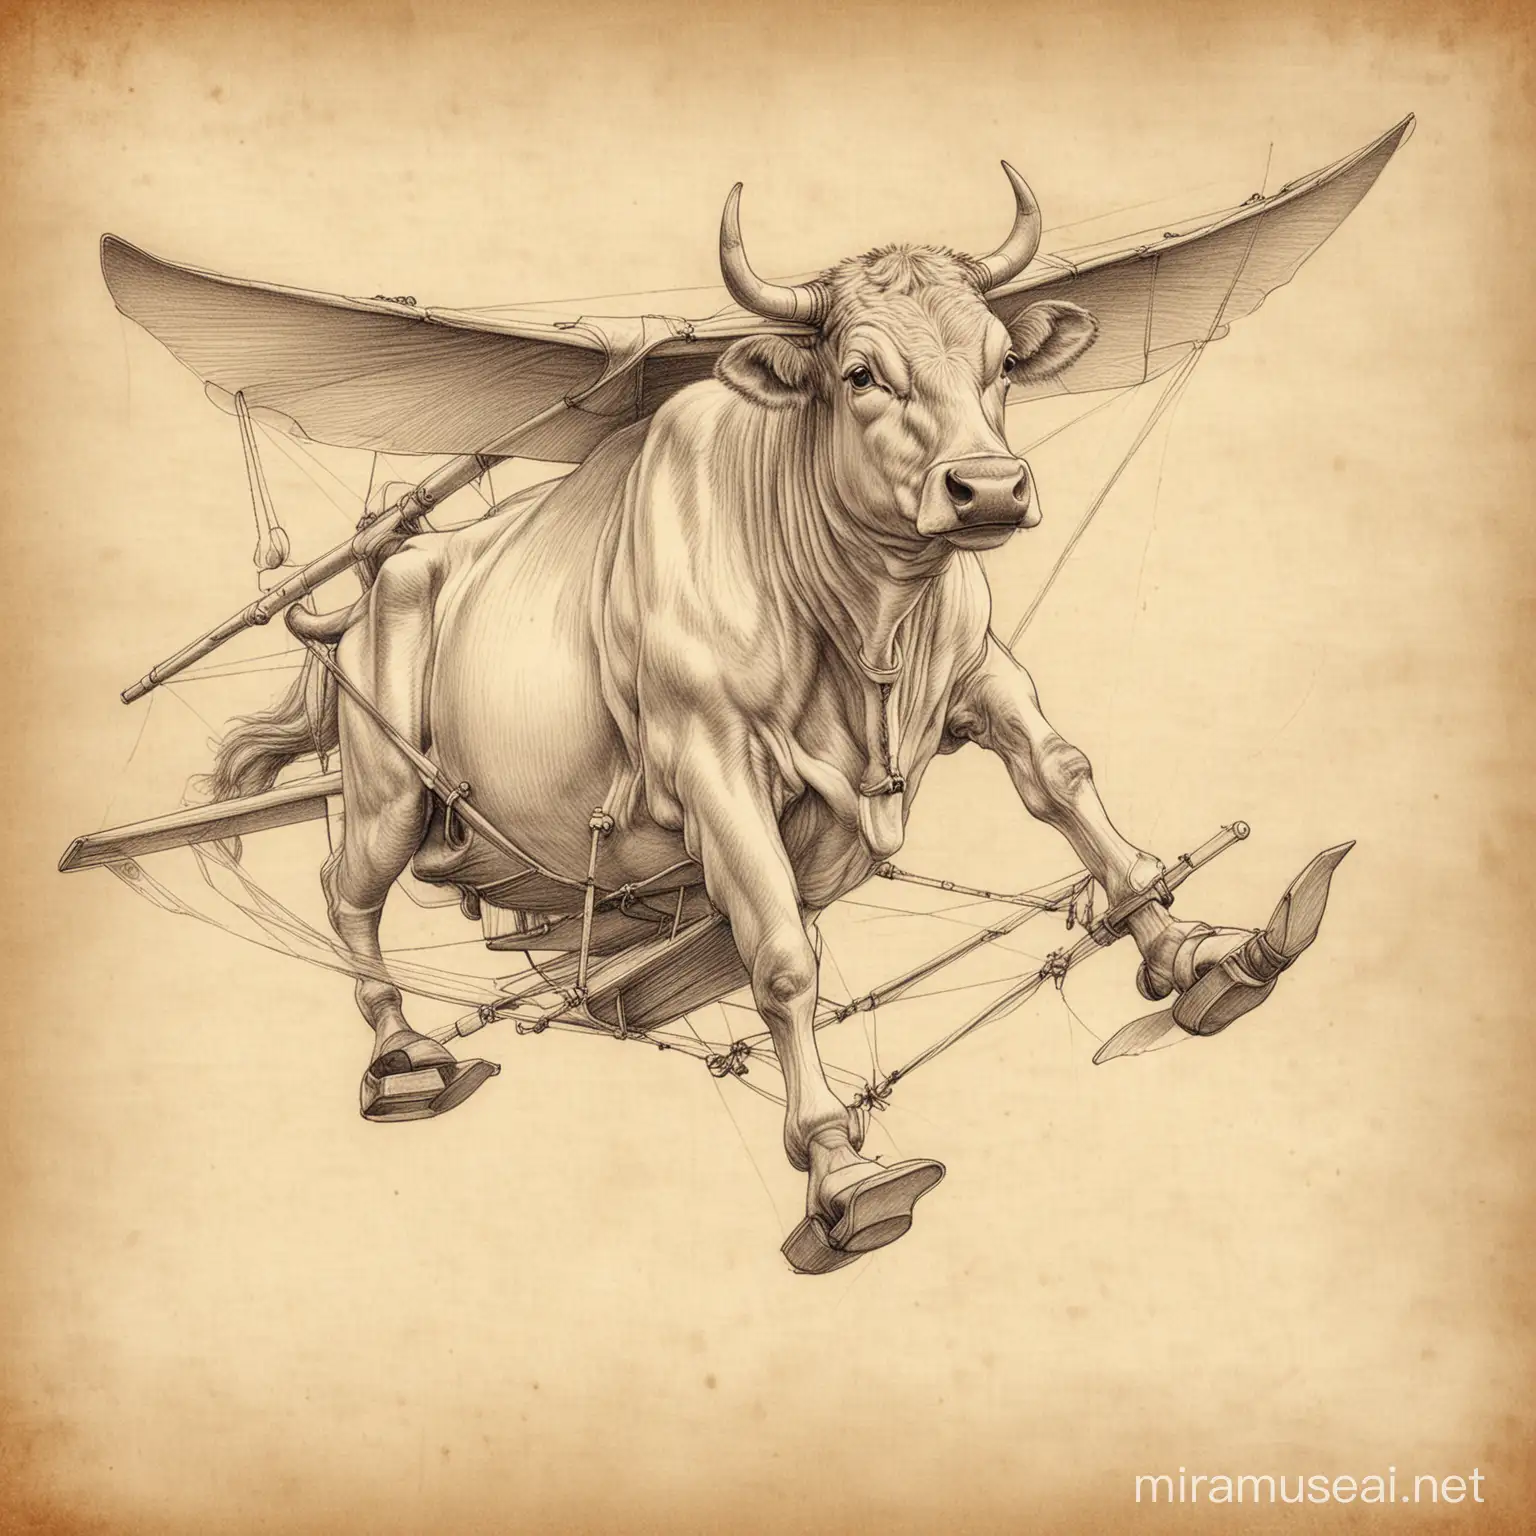 Leonardo da Vinci Style Cow Glider Sketch